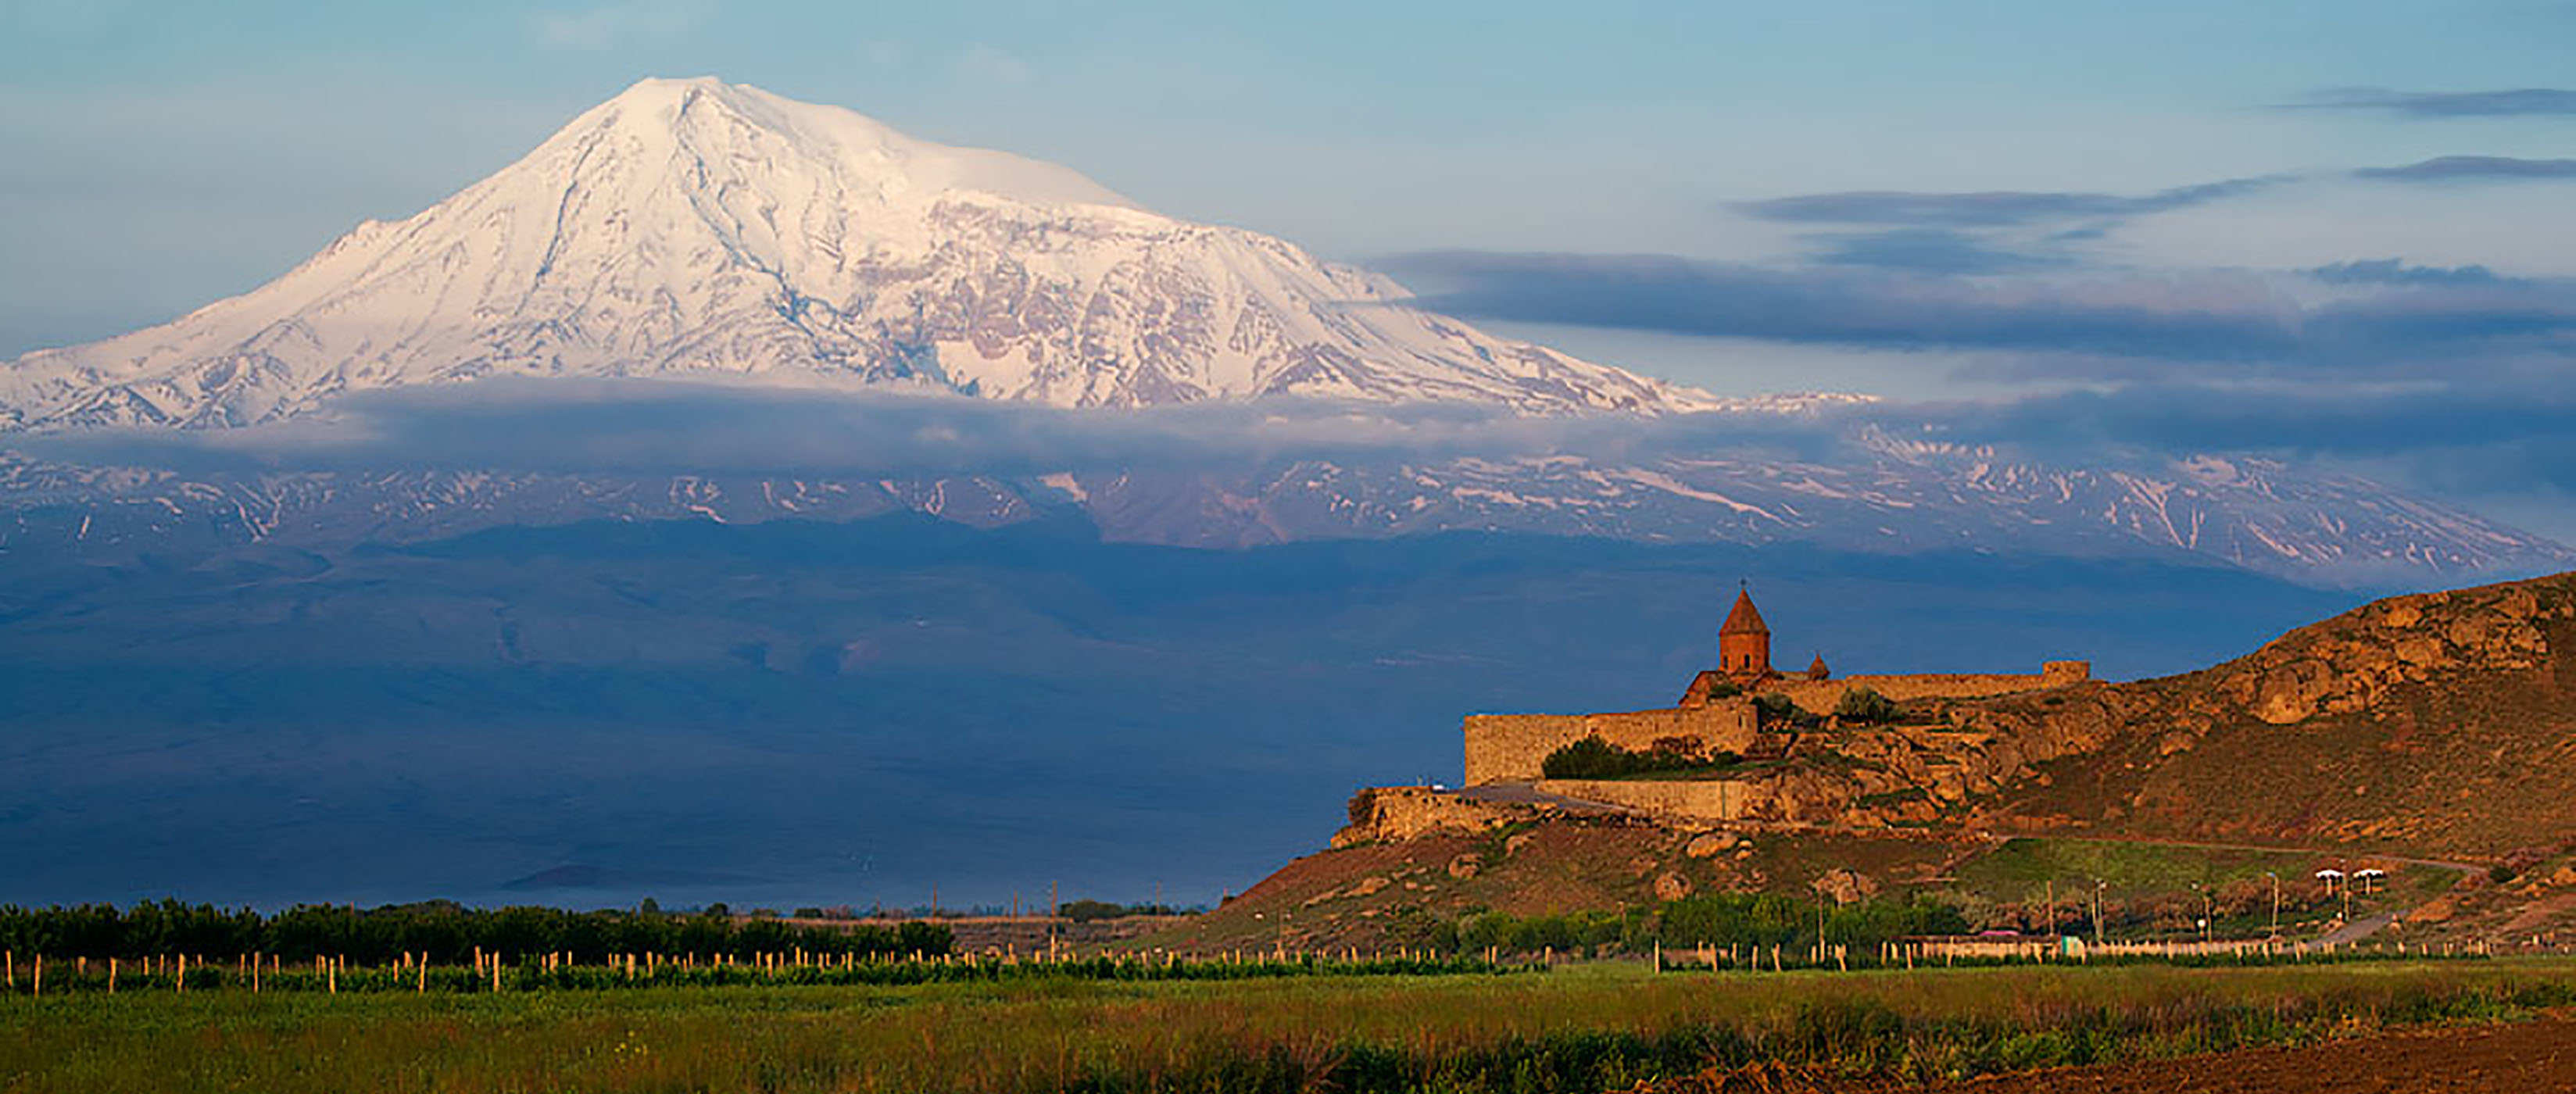 Through Weedy Trails of Armenia